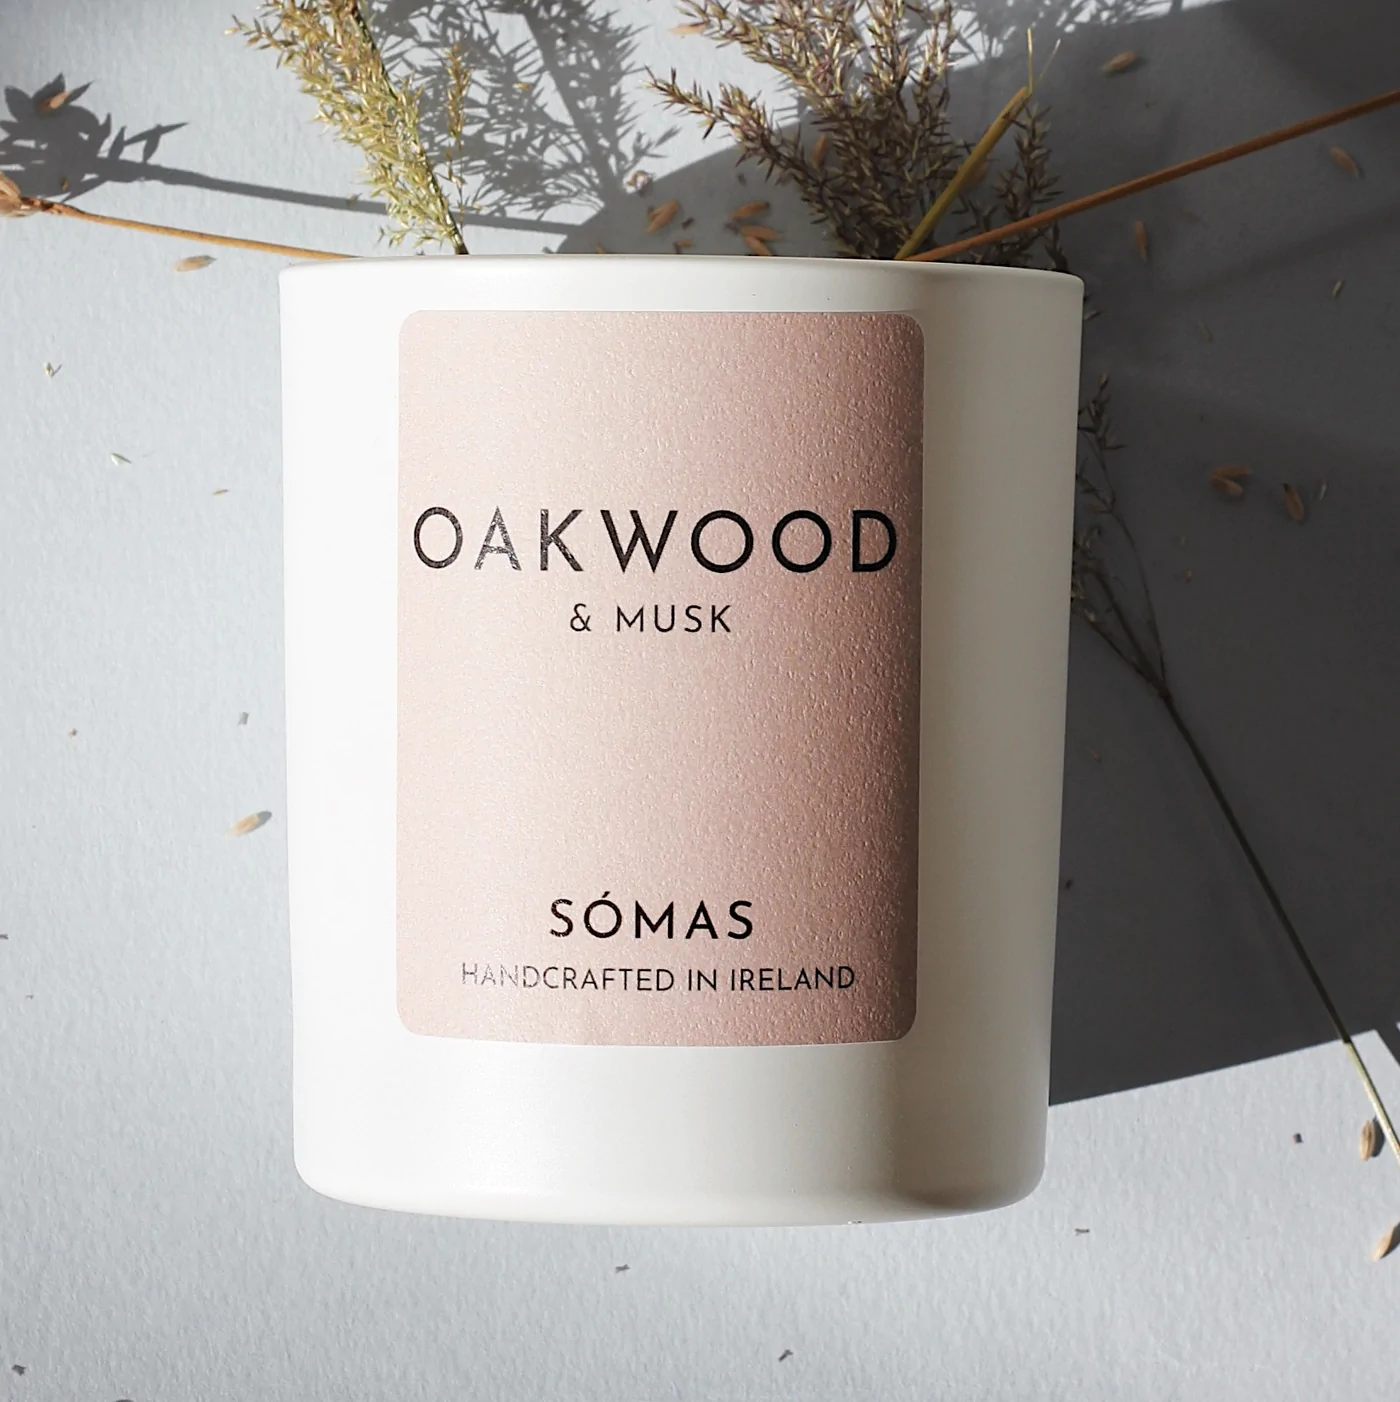 Somas Studio Candle - Oakwood & Musk